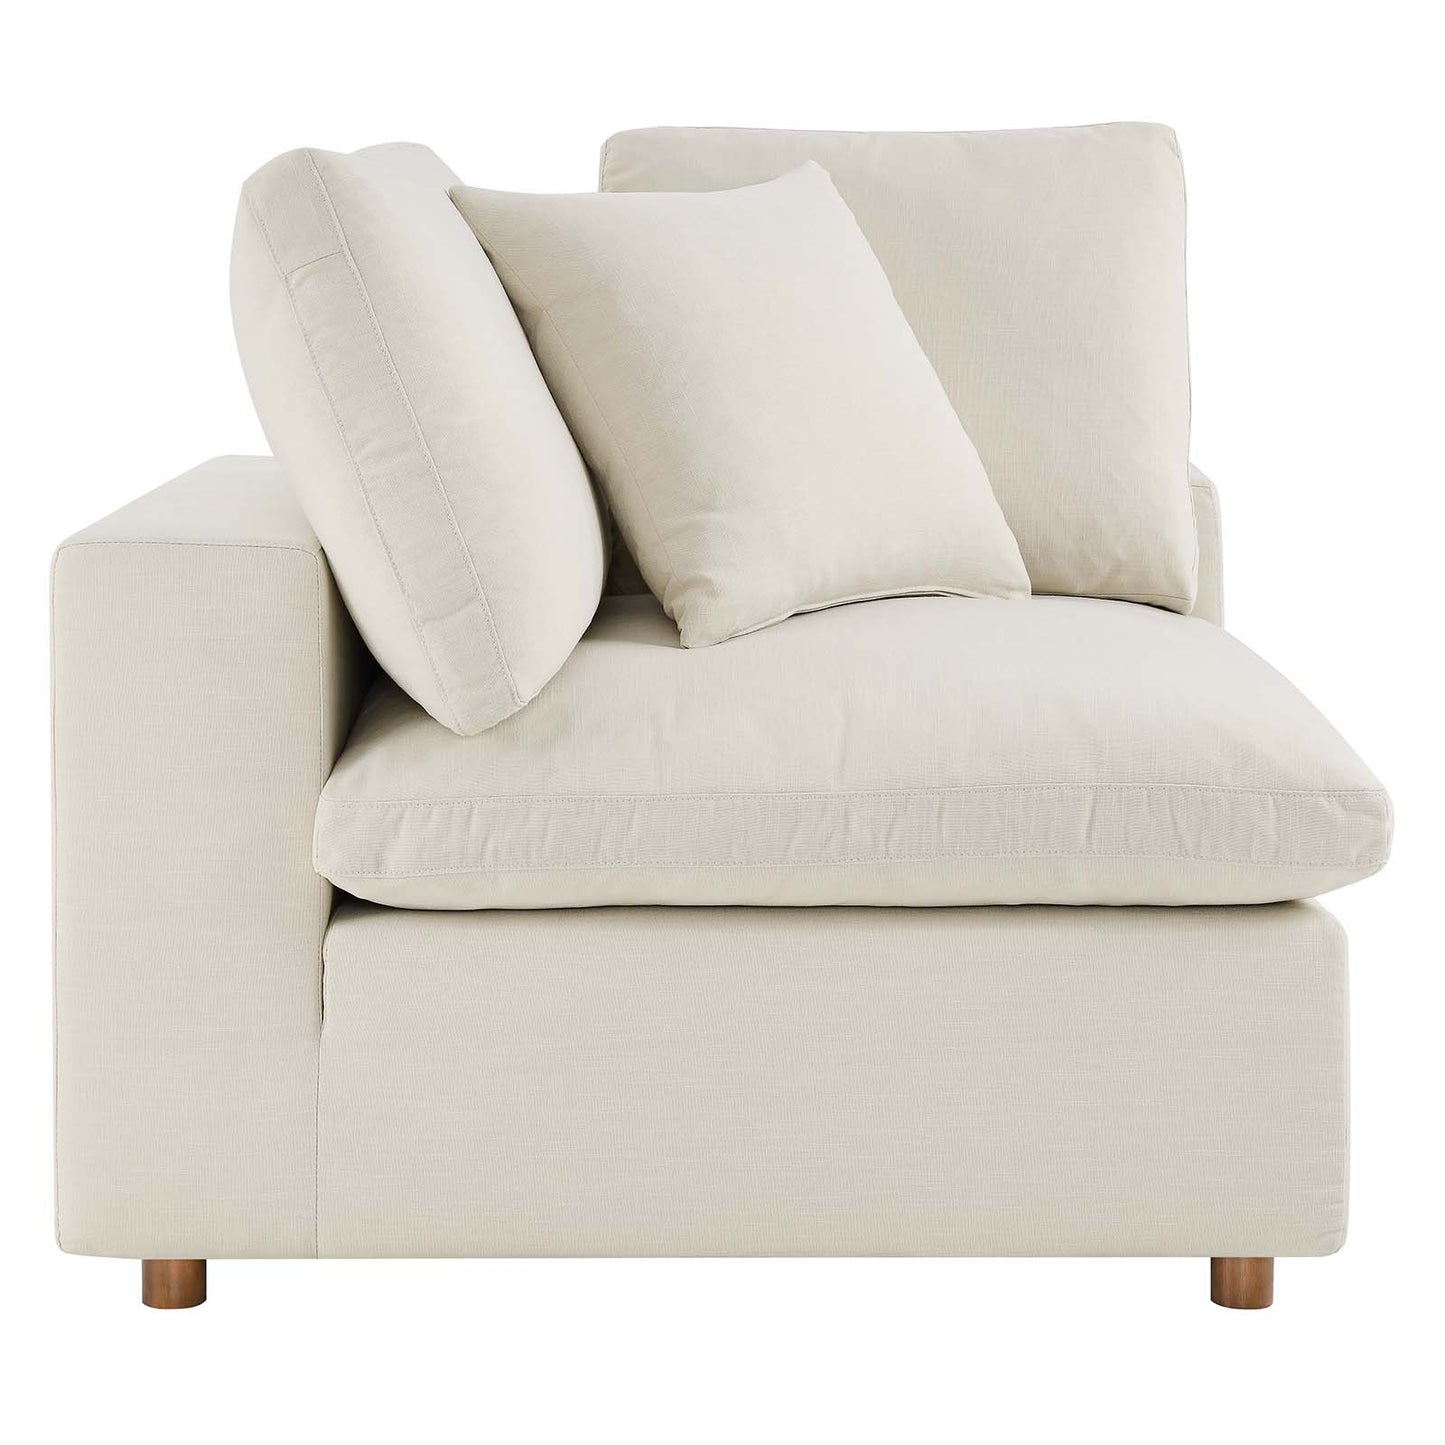 Commix Down Filled Overstuffed 4 Piece Sectional Sofa Set Light Beige EEI-3356-LBG